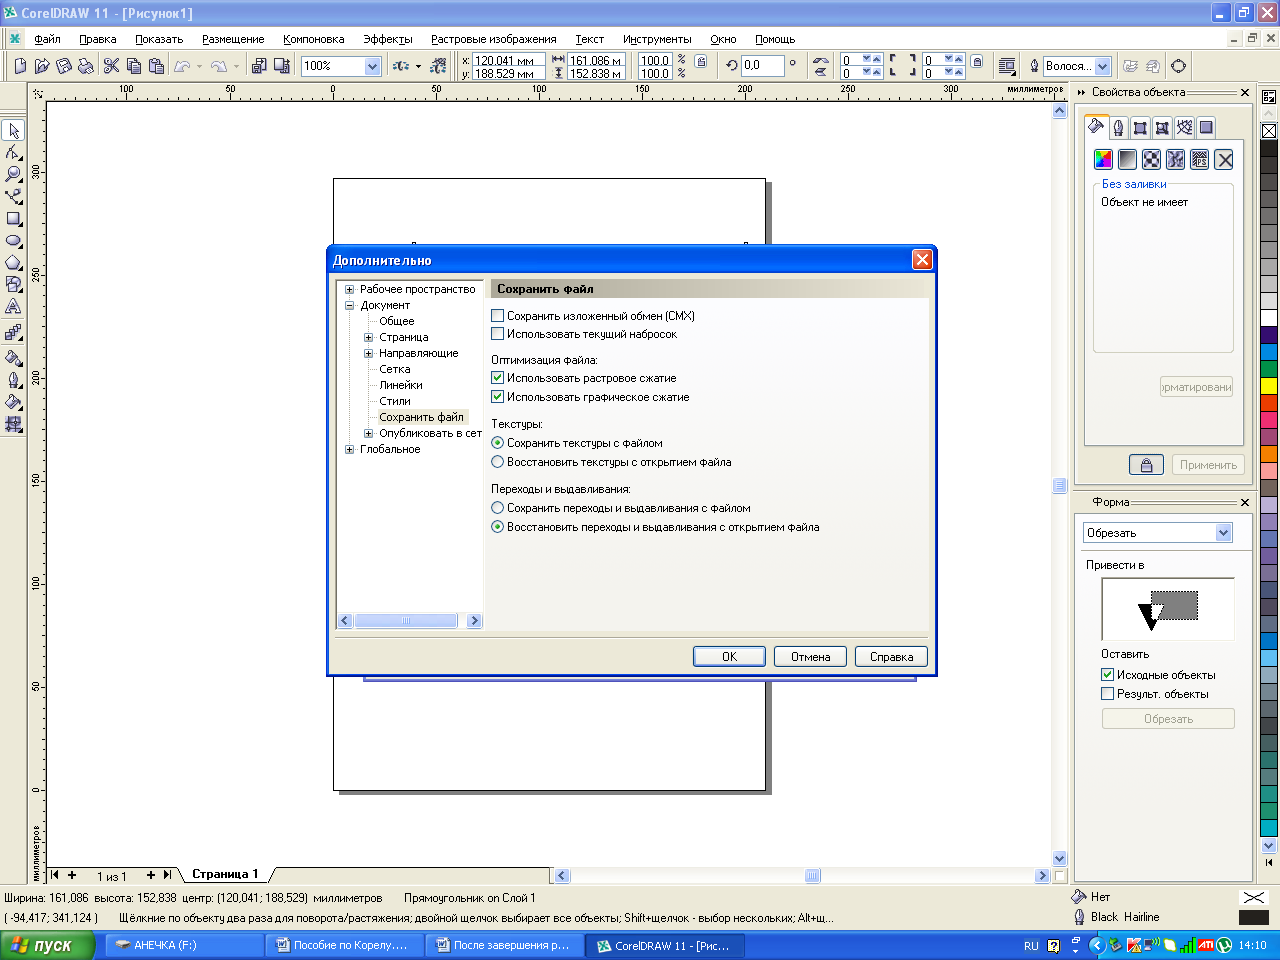 Практические работы в векторном редакторе CorelDRAW: Методические указания к выполнению практических работ. ПМ.01 «Ввод и обработка цифровой информации» (учебная практика)